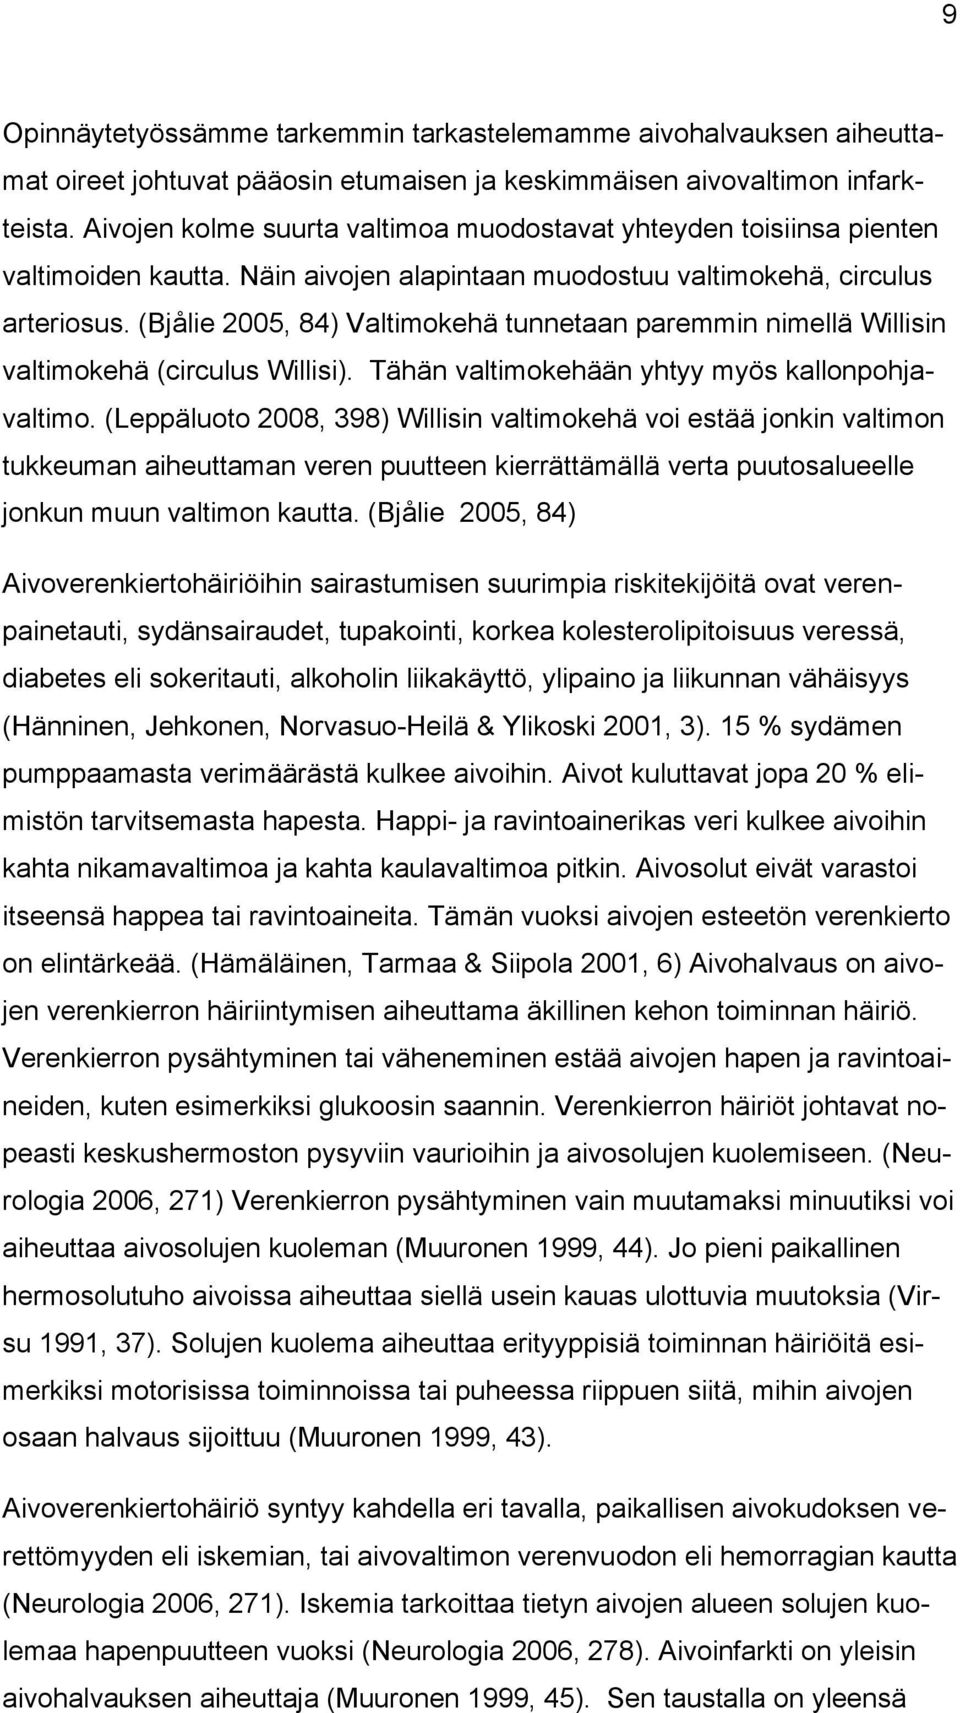 (Bjålie 2005, 84) Valtimokehä tunnetaan paremmin nimellä Willisin valtimokehä (circulus Willisi). Tähän valtimokehään yhtyy myös kallonpohjavaltimo.